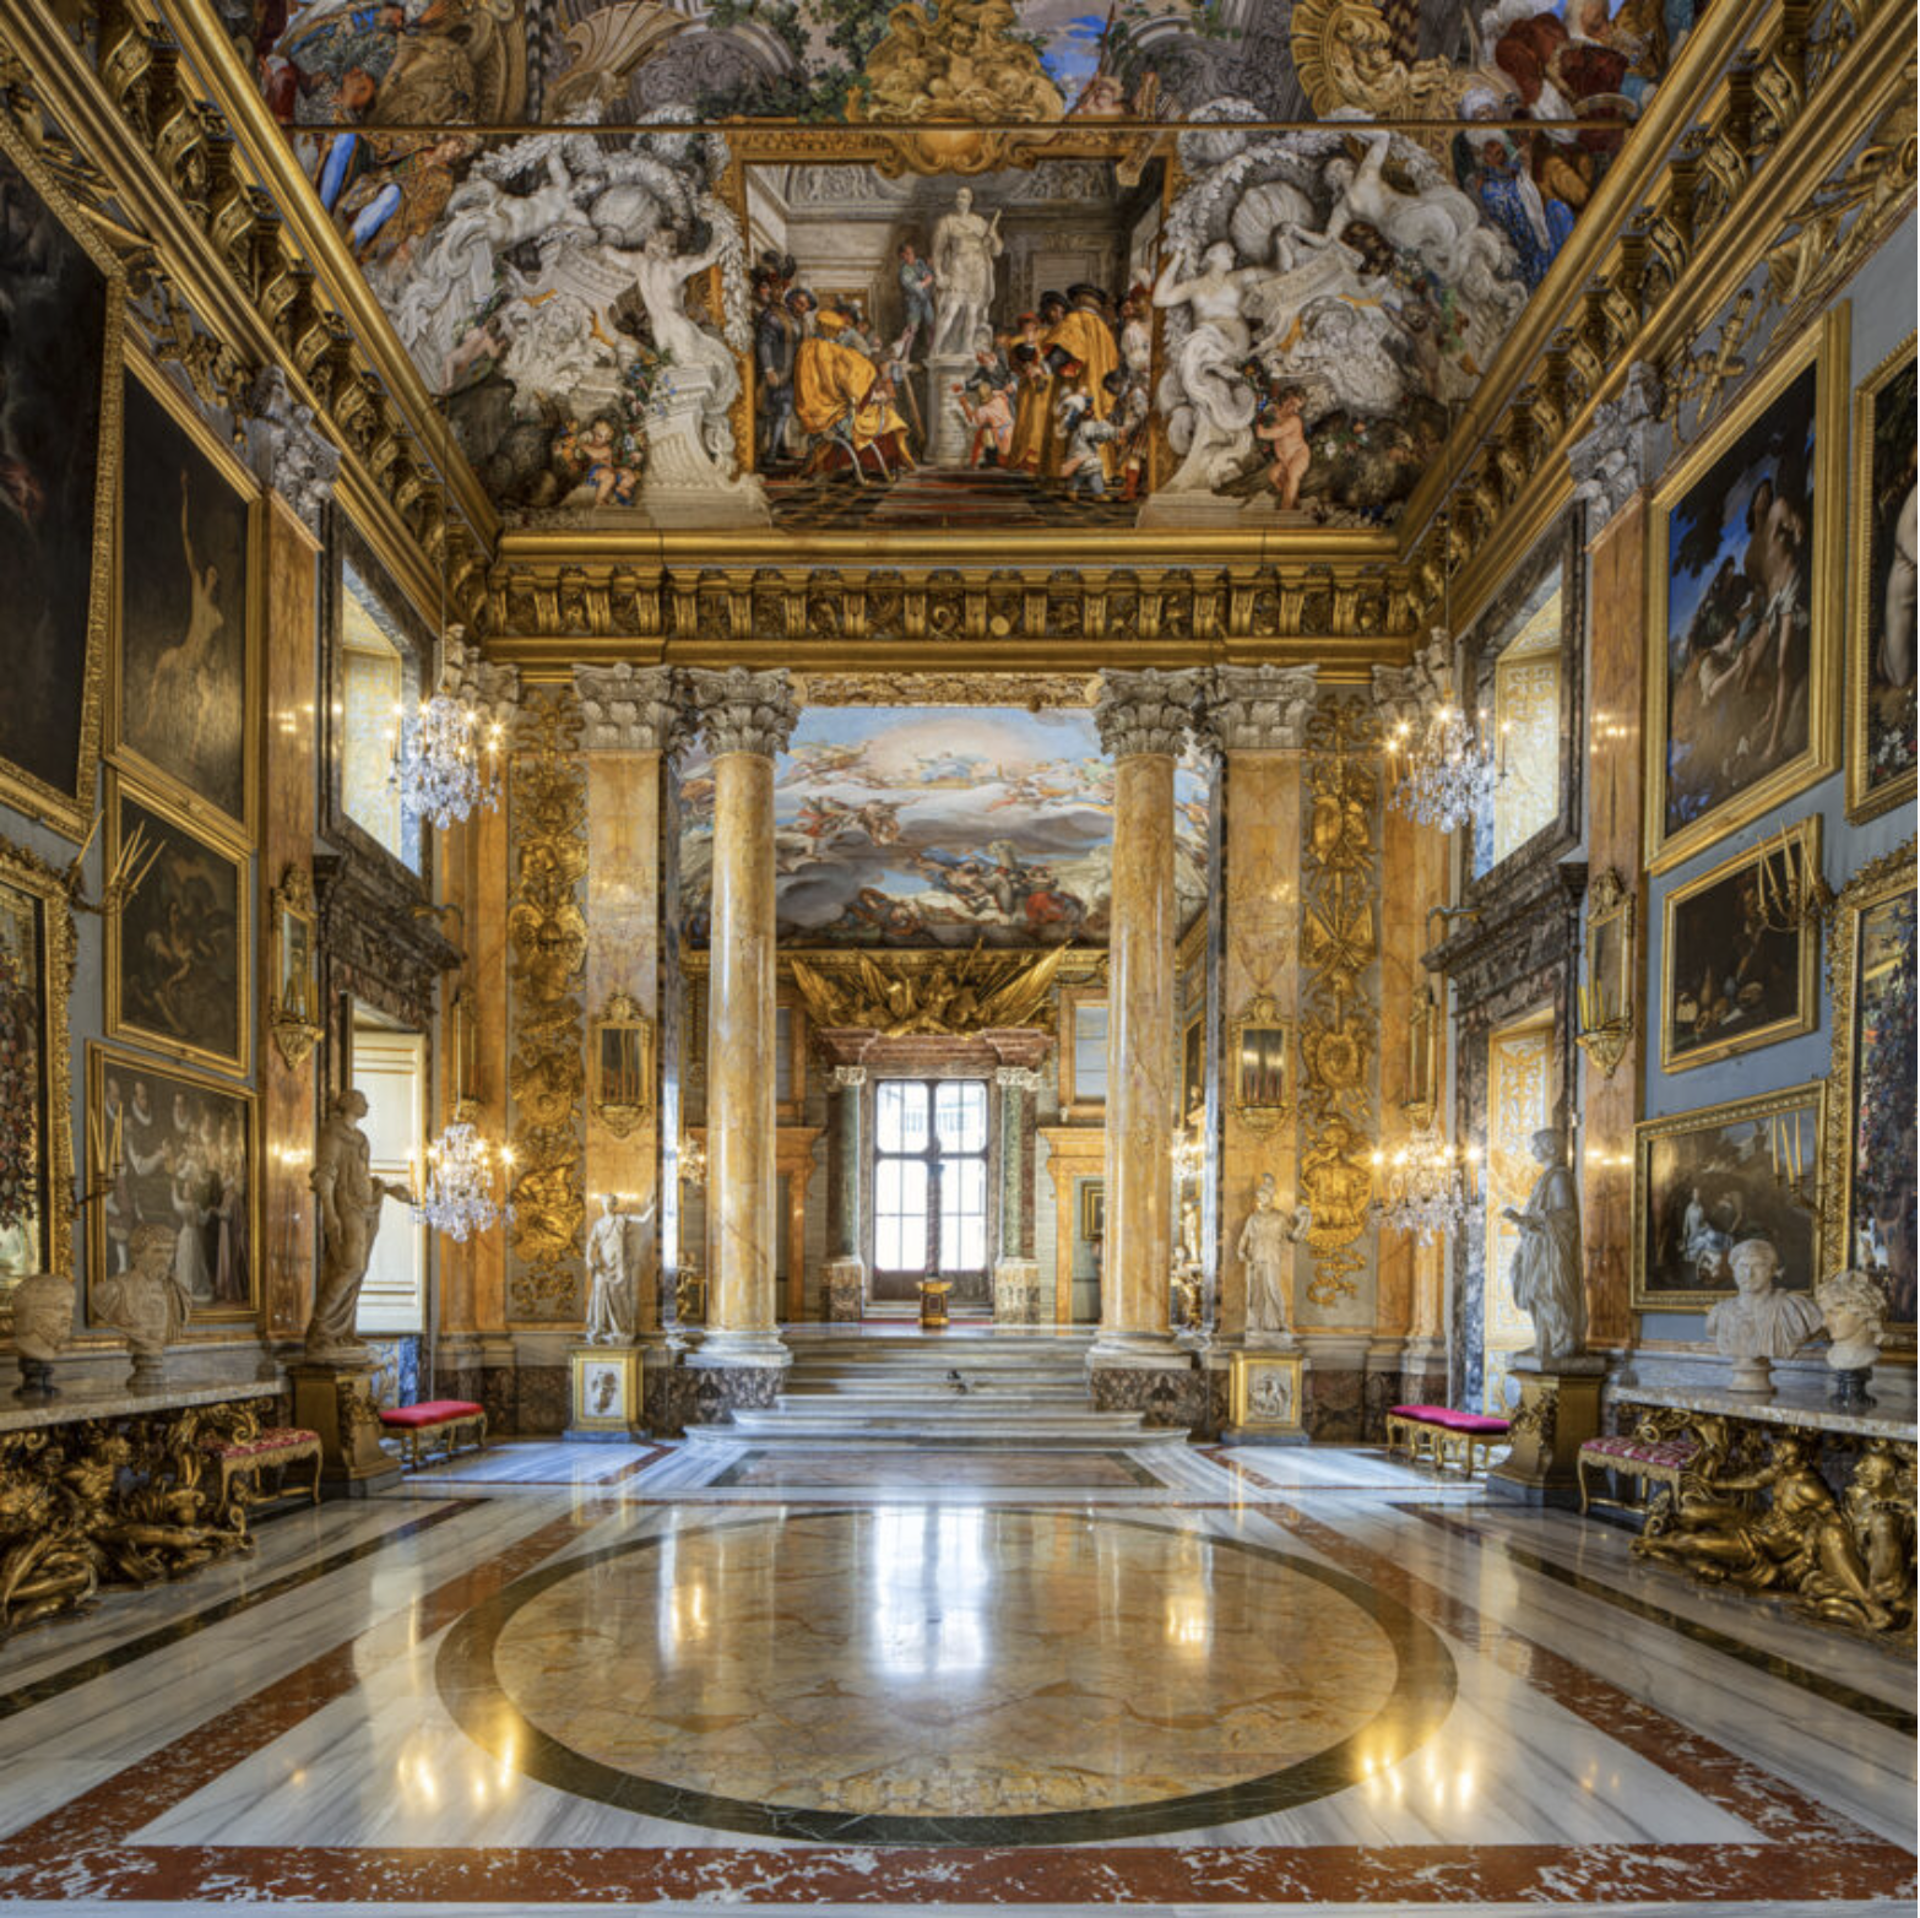 Galleria Colonna, Rome, Italy by Reinhard Gorner